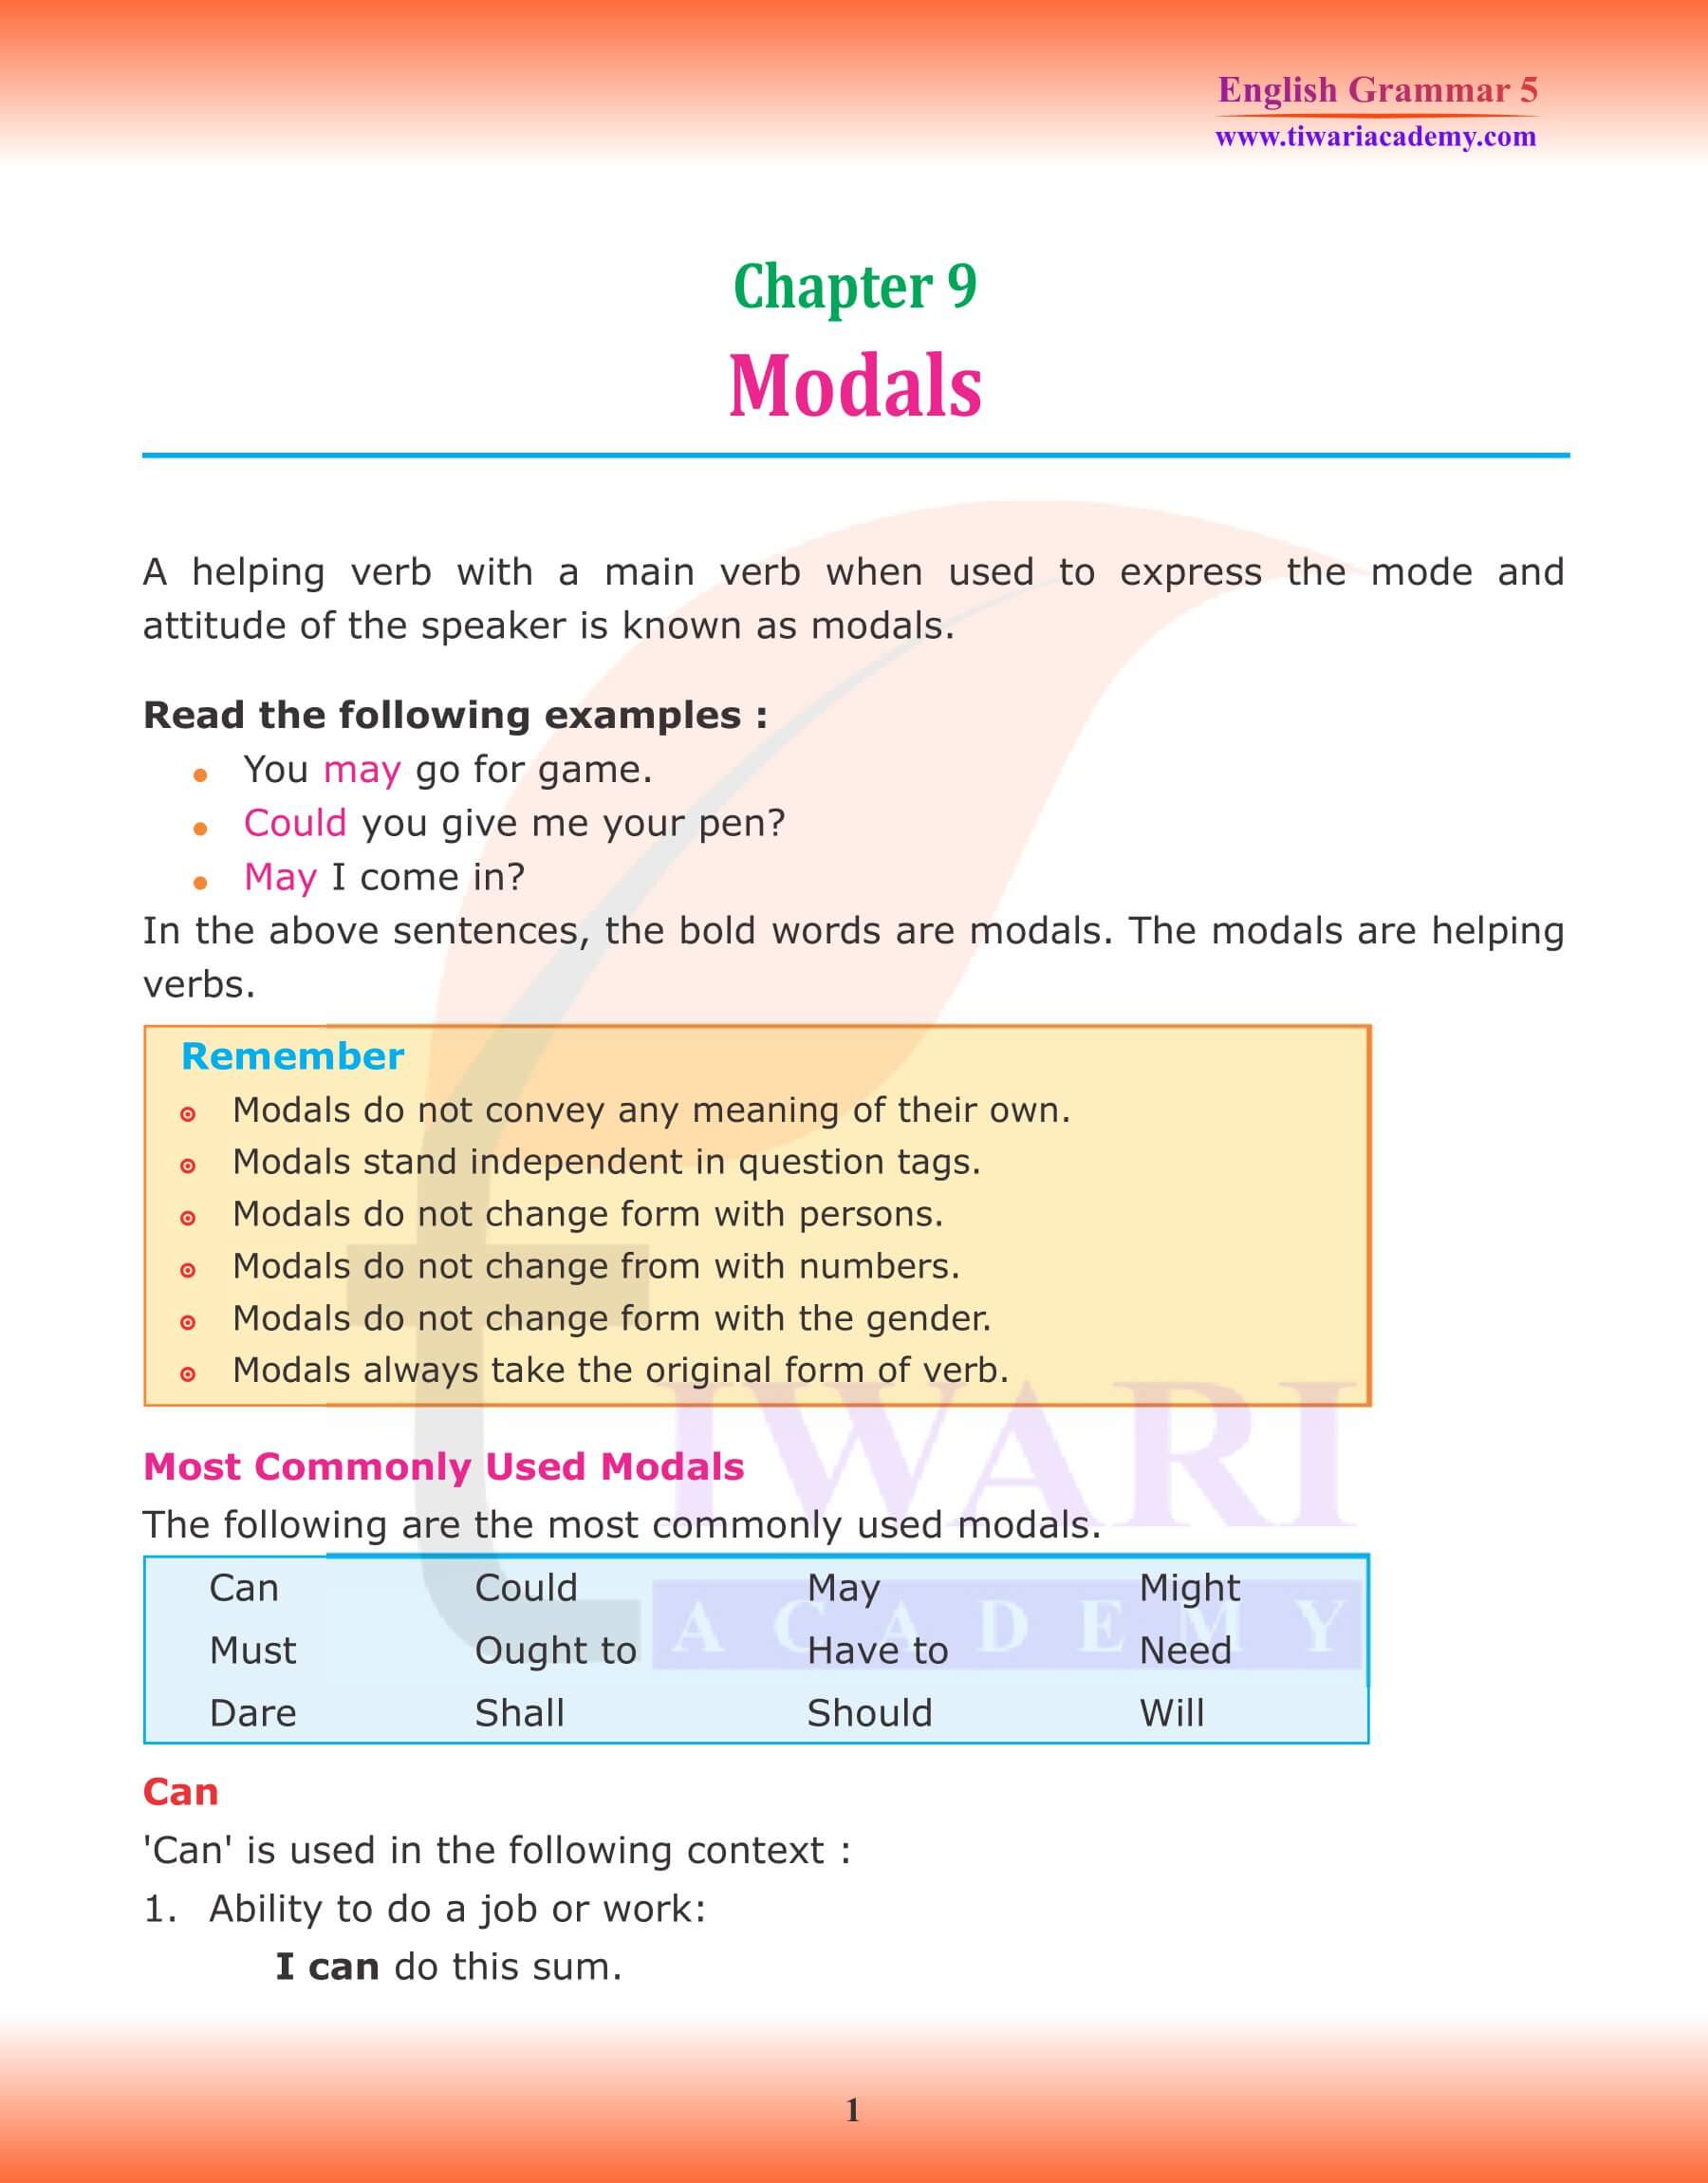 Class 5 Grammar Chapter 9 Modals